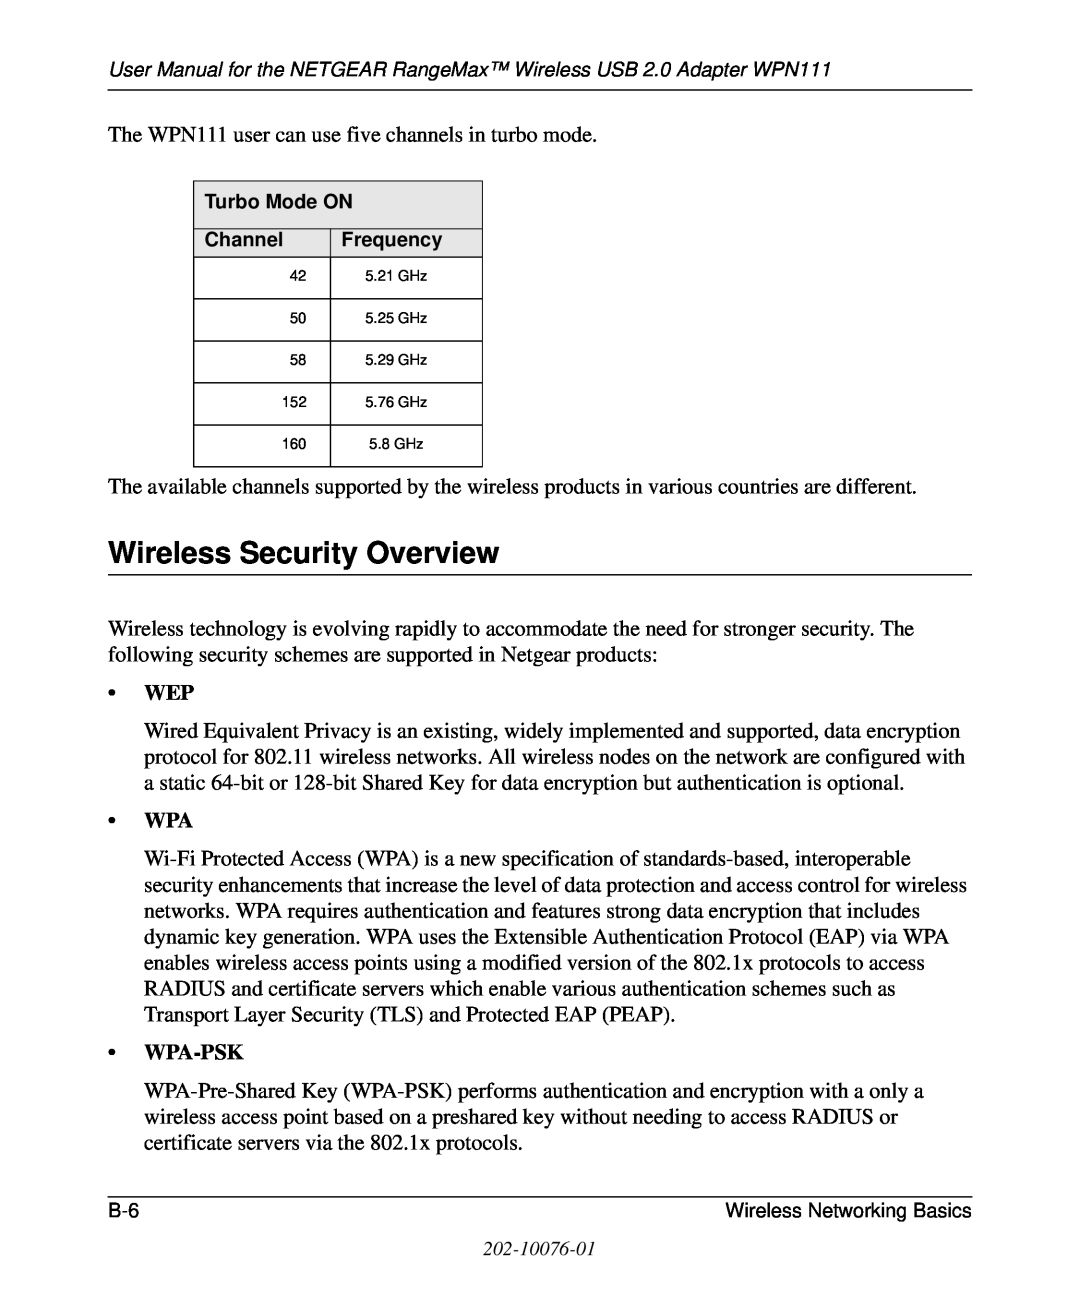 NETGEAR WPN111 user manual Wireless Security Overview, Wpa-Psk 